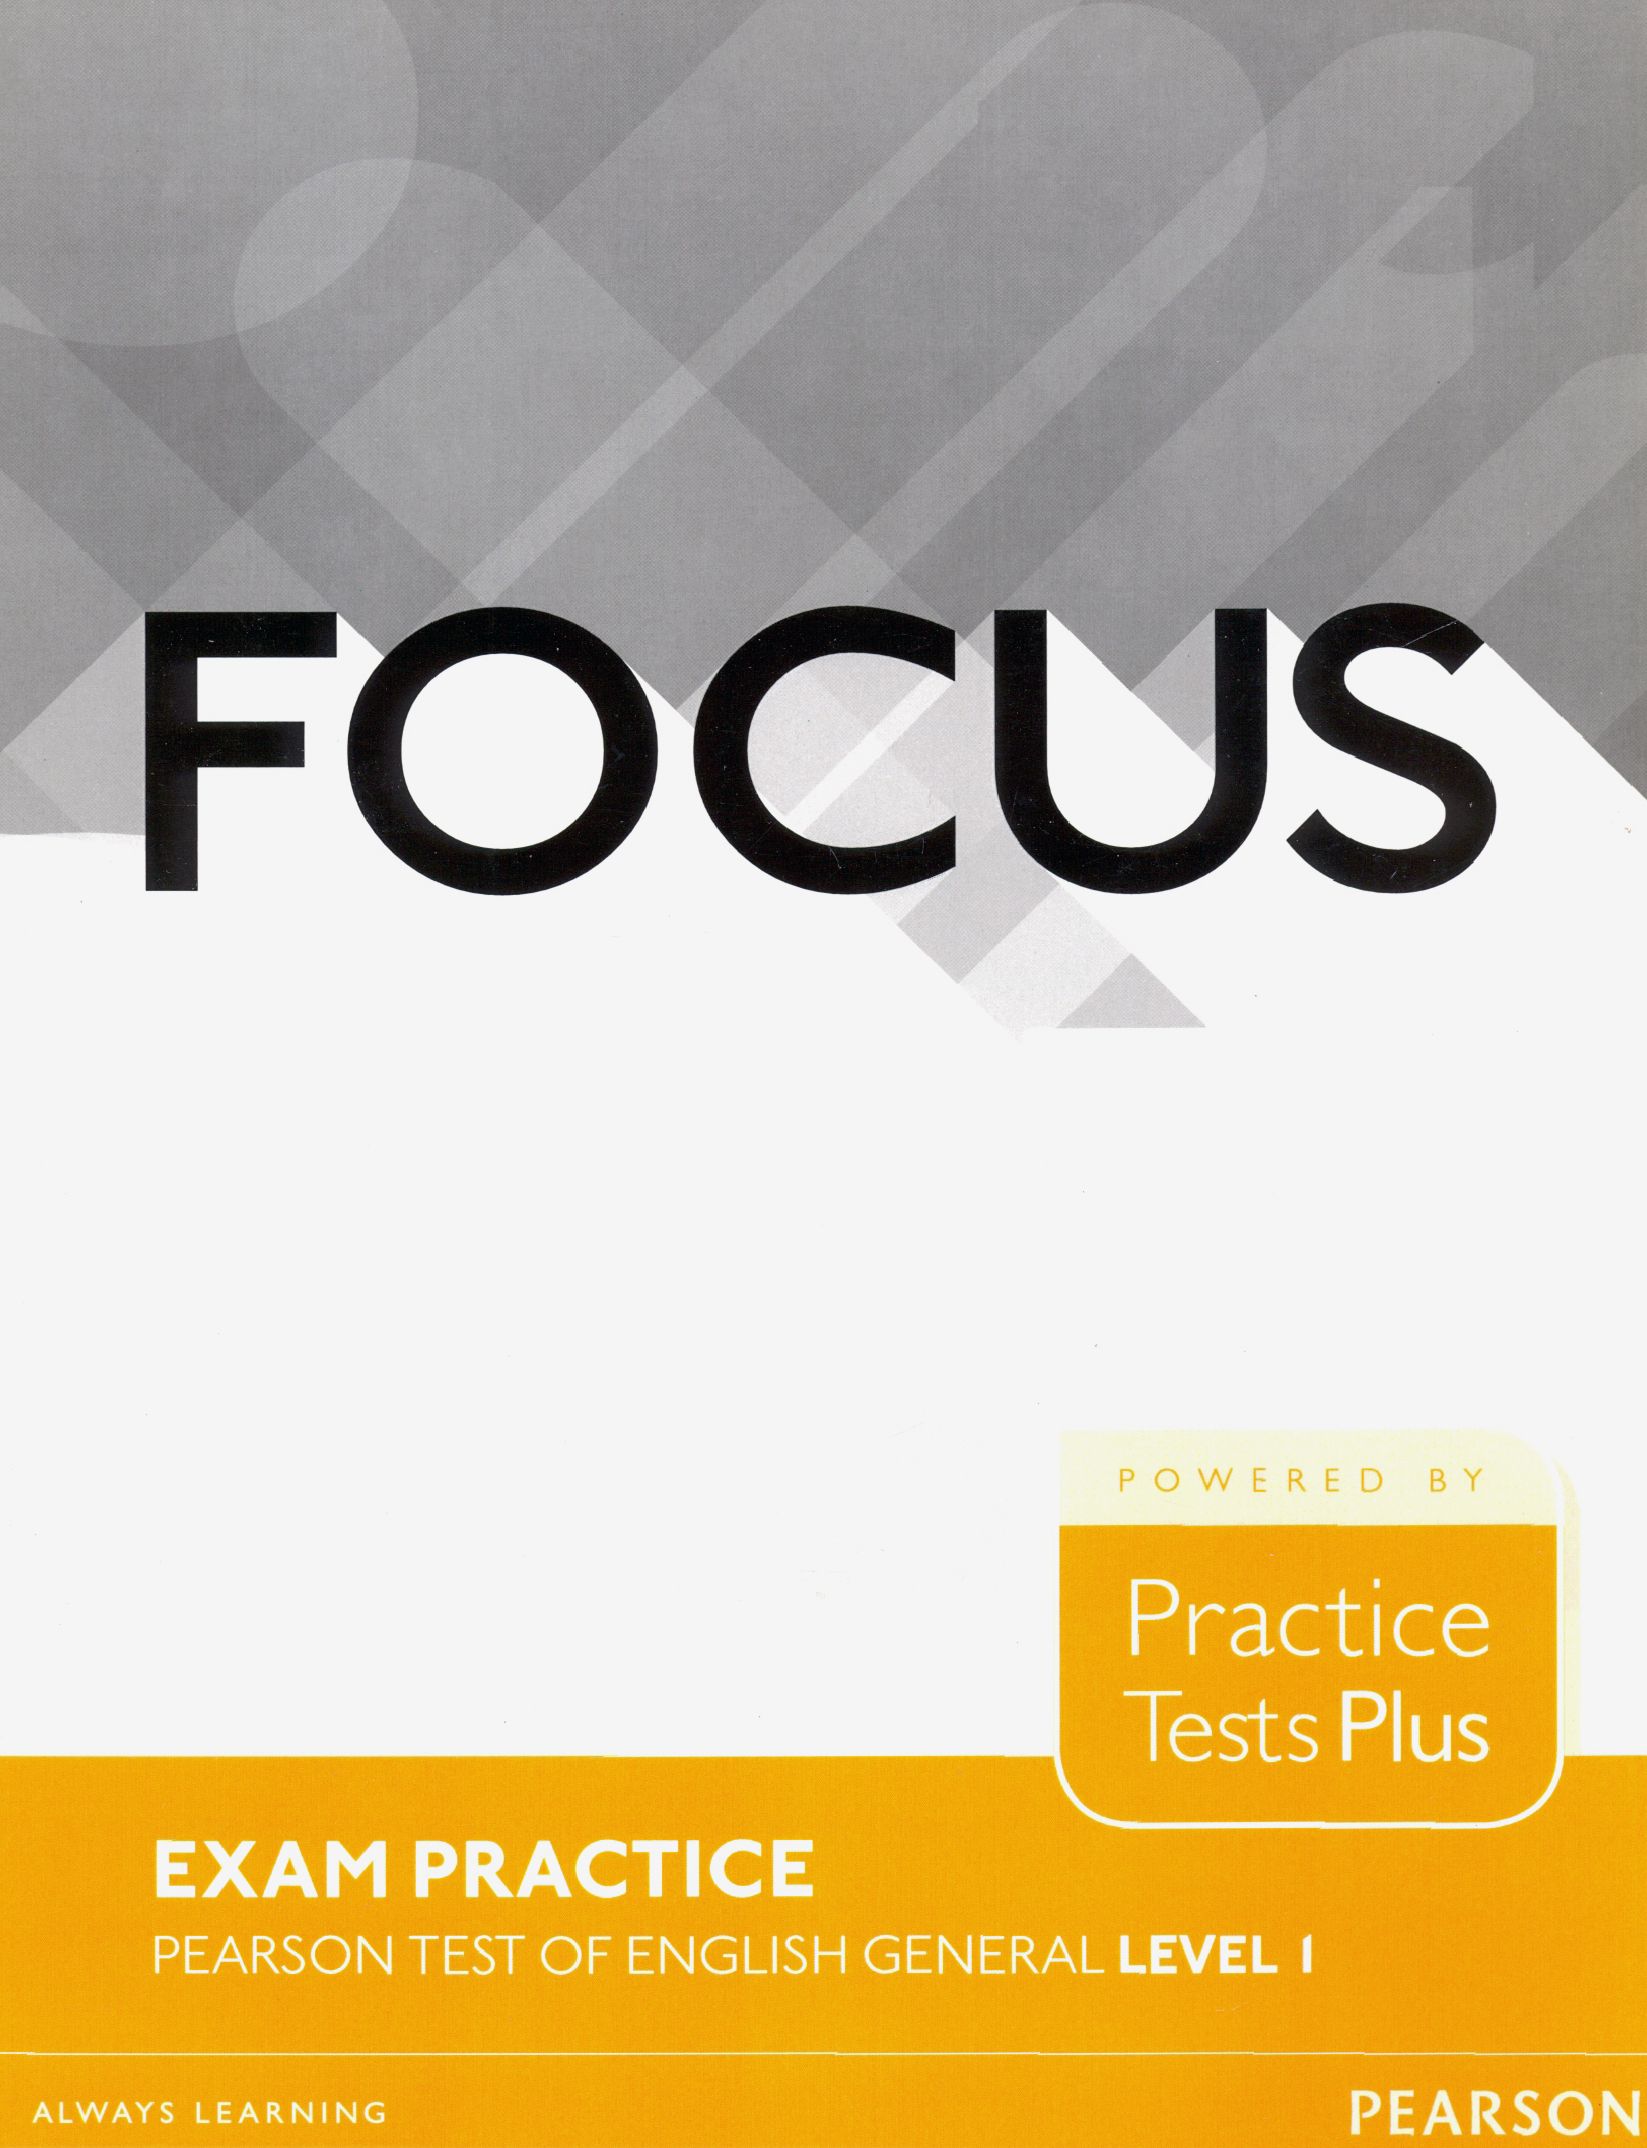 Focus 4 unit 4. Focus 3 Pearson. Focus 1 Practice Tests Plus. Focus Exam Practice. Focus 4 Exam Practice.